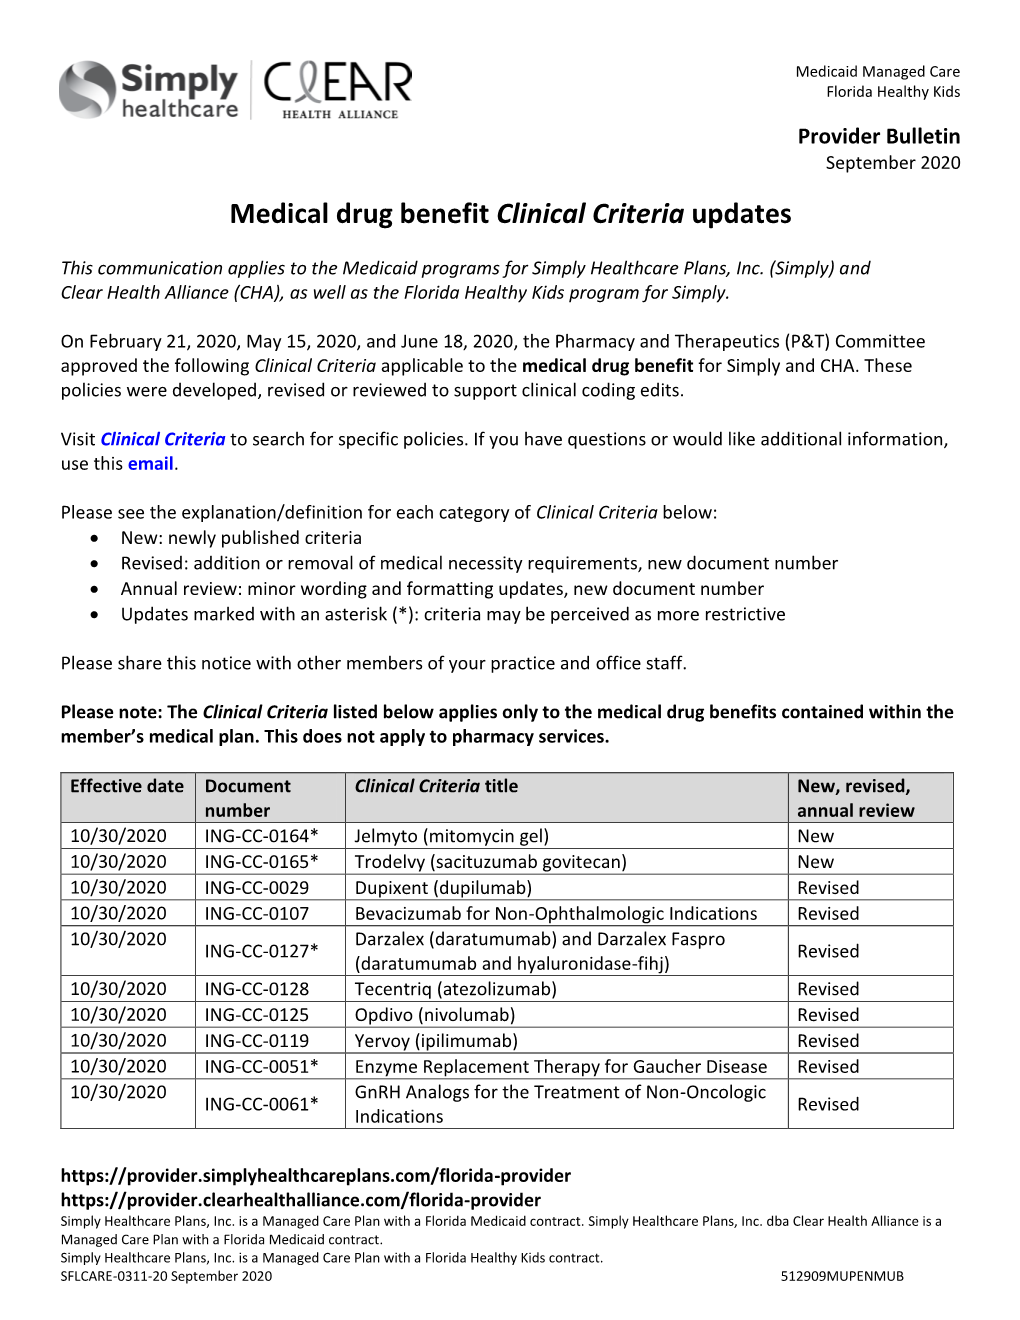 Clinical Criteria Updates